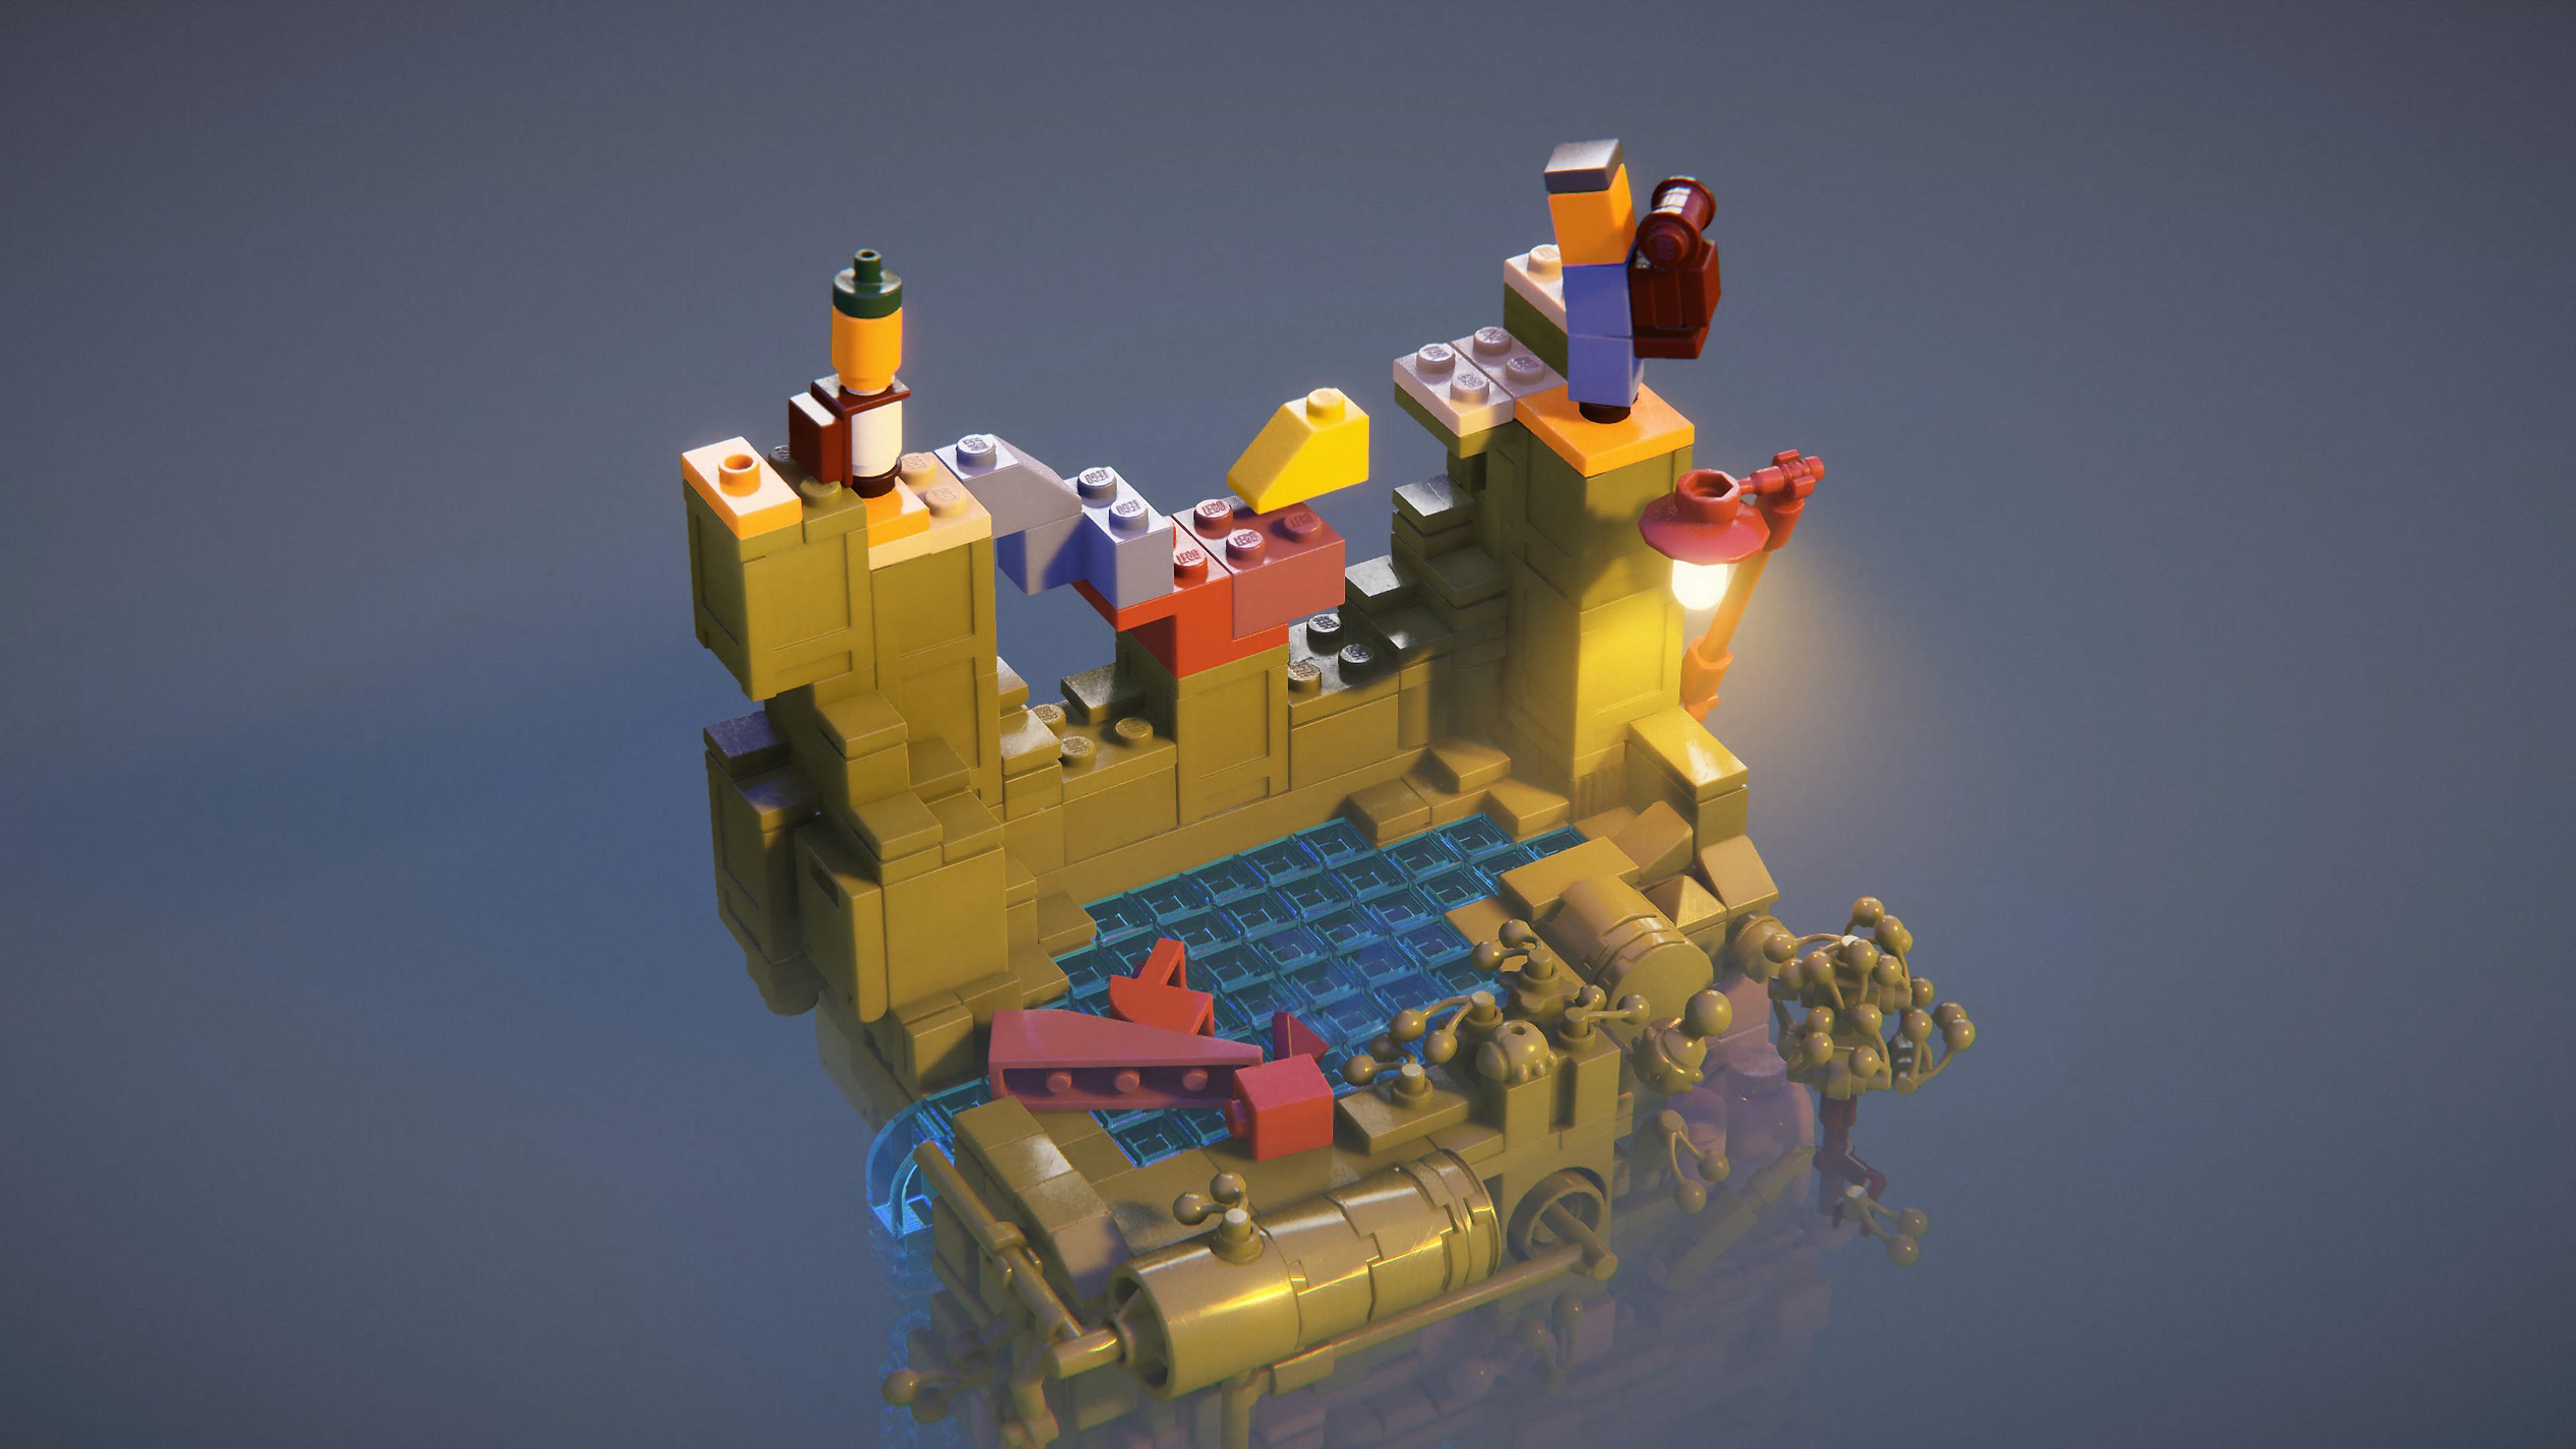 LEGO Builder's Journey 스크린샷, LEGO 배경